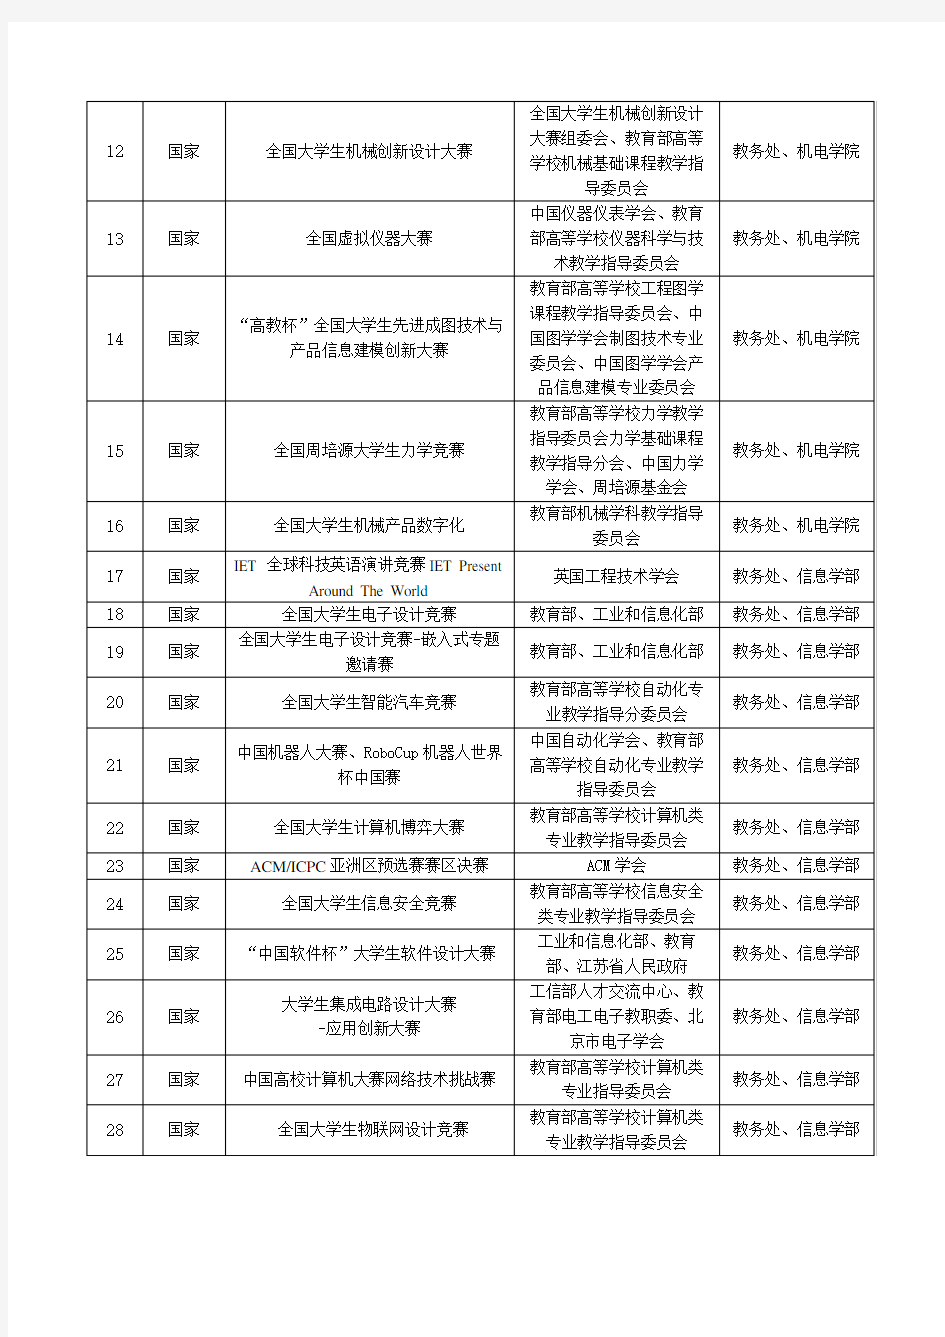 2017年《北京工业大学本科生科技竞赛项目认定名单》